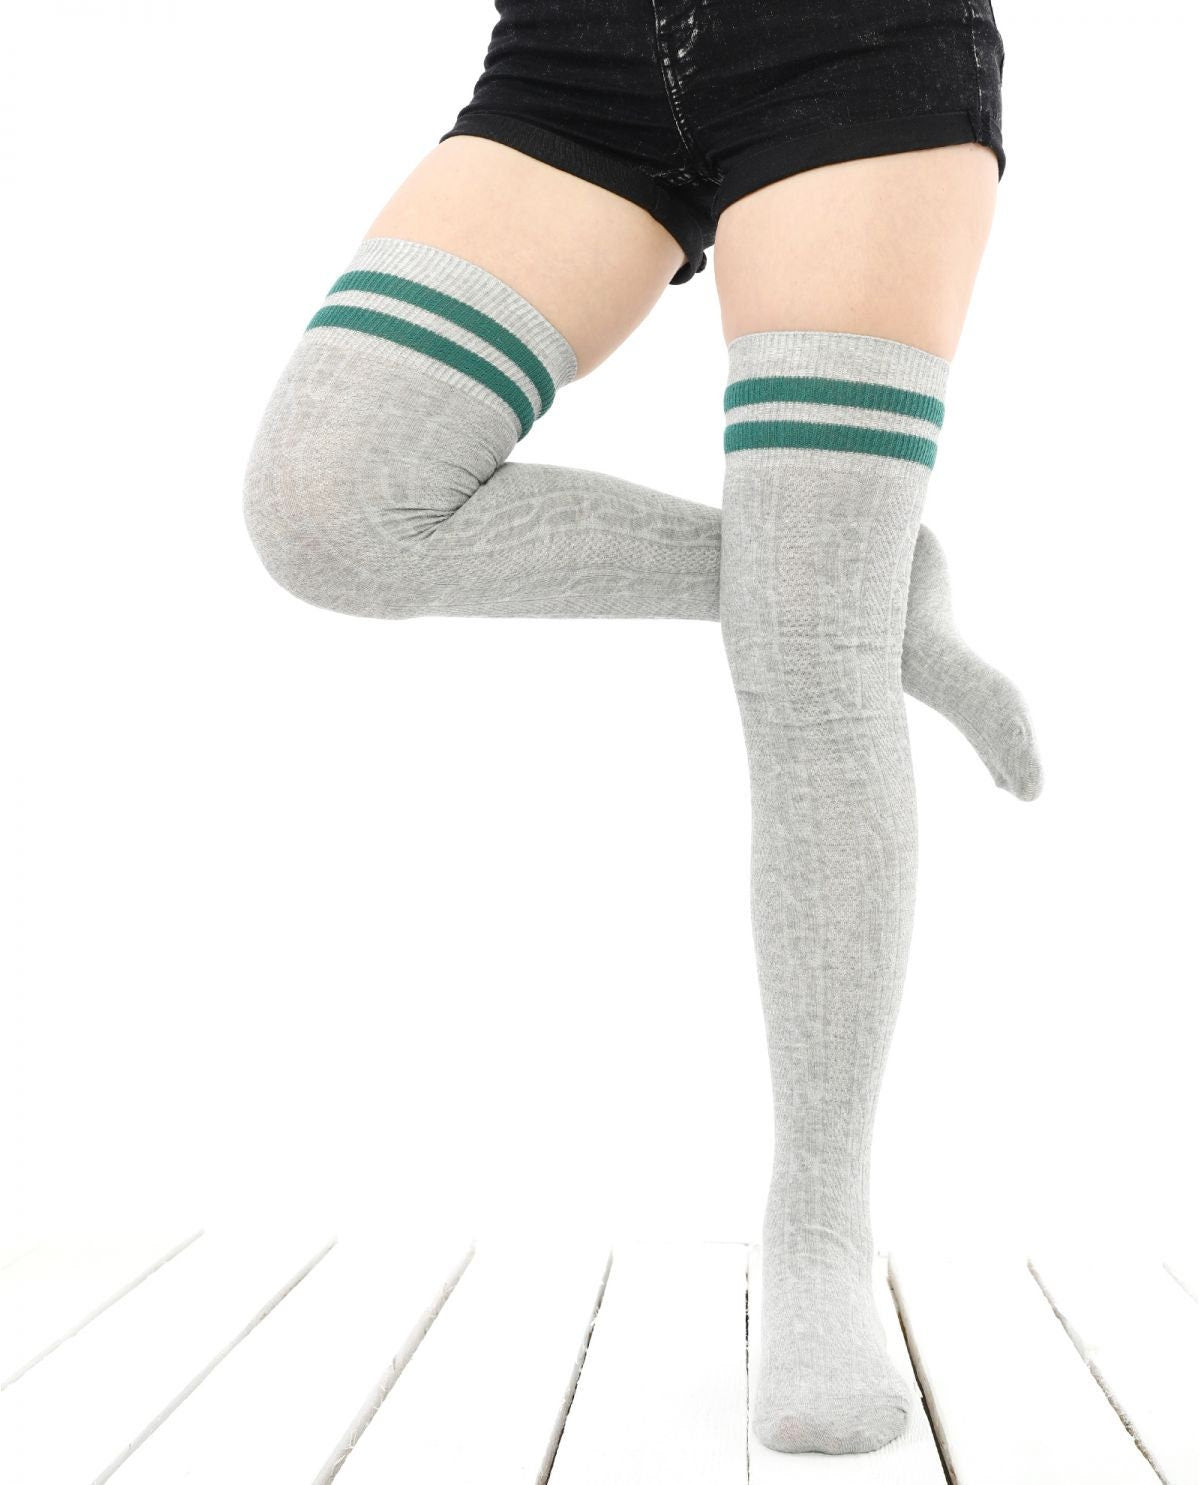 Women's Long Over the Knee Socks, Green Stripe Thigh High, Skating Sock, Knee High Sock, Stocking Gift, Cotton Knee Socks, Gift Idea for Her